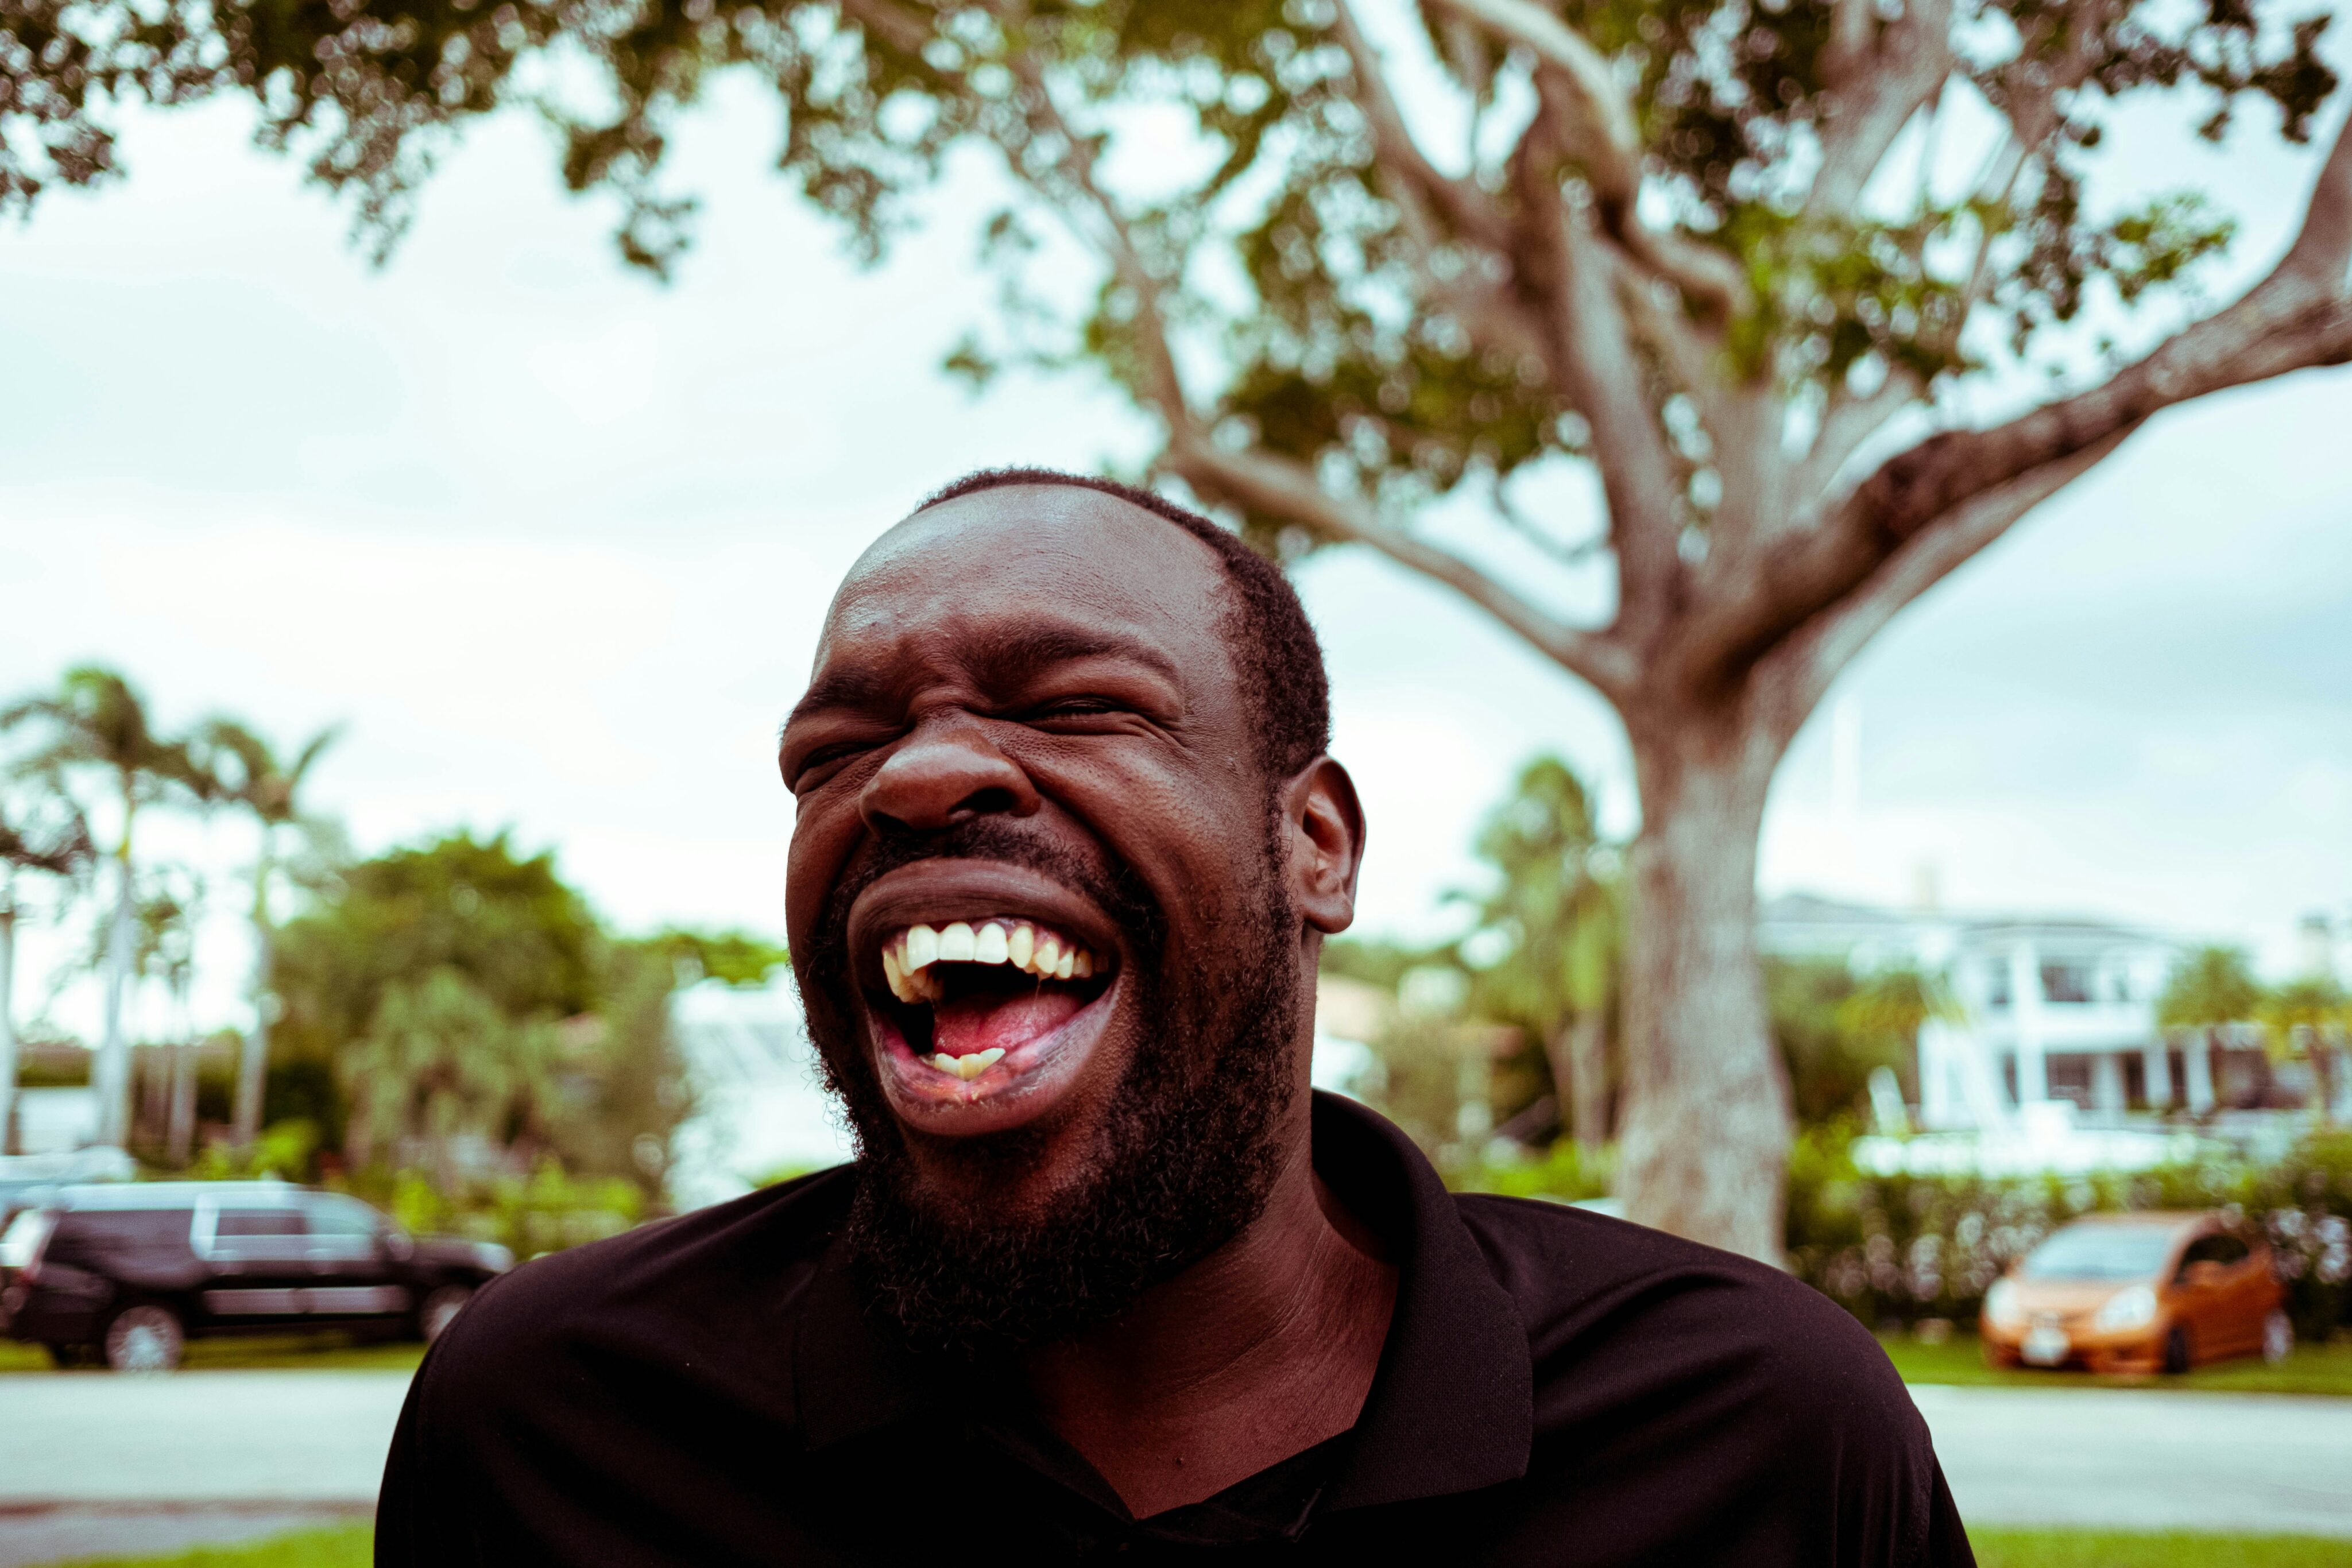 Entzündung Mundschleimhaut: Ein Mann lacht herzlich mit geschlossenen Augen vor einem Hintergrund mit grünen Bäumen